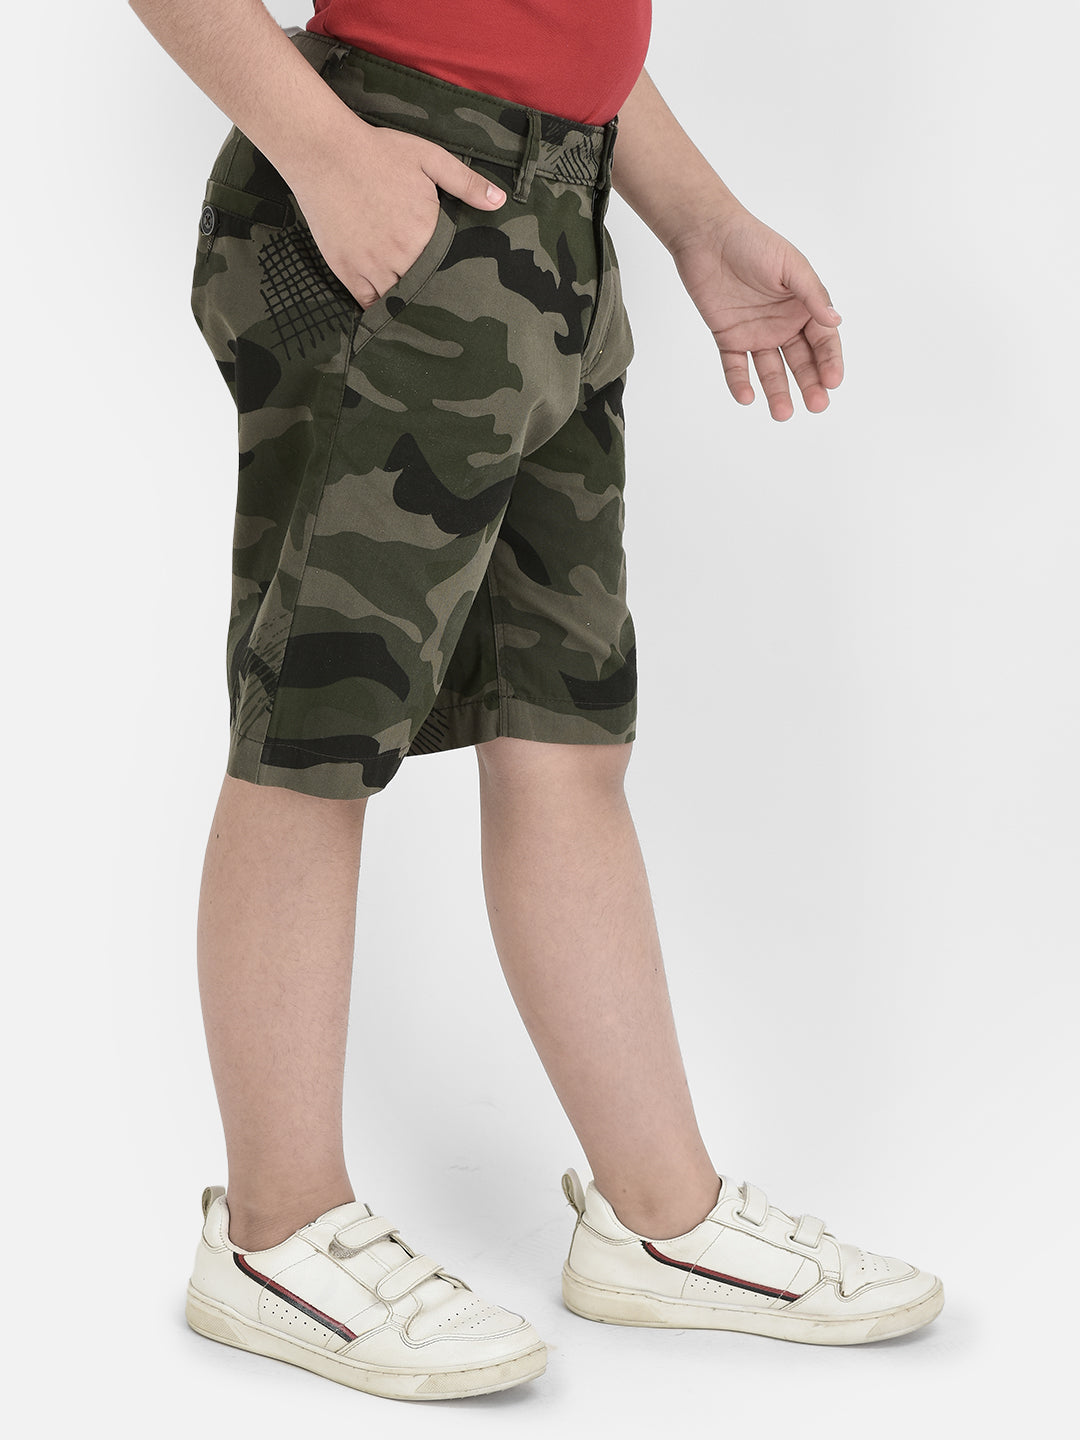 Olive Camouflage Shorts